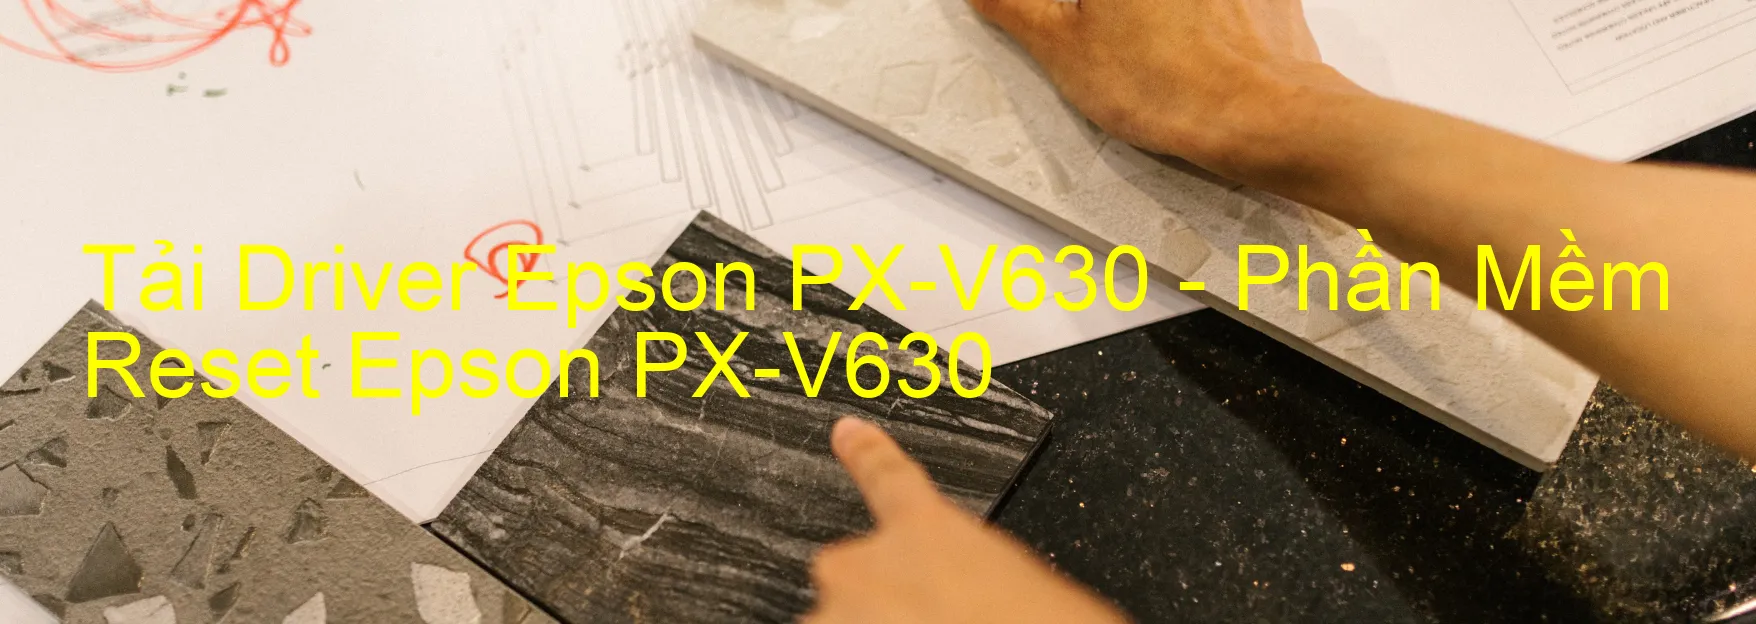 Driver Epson PX-V630, Phần Mềm Reset Epson PX-V630